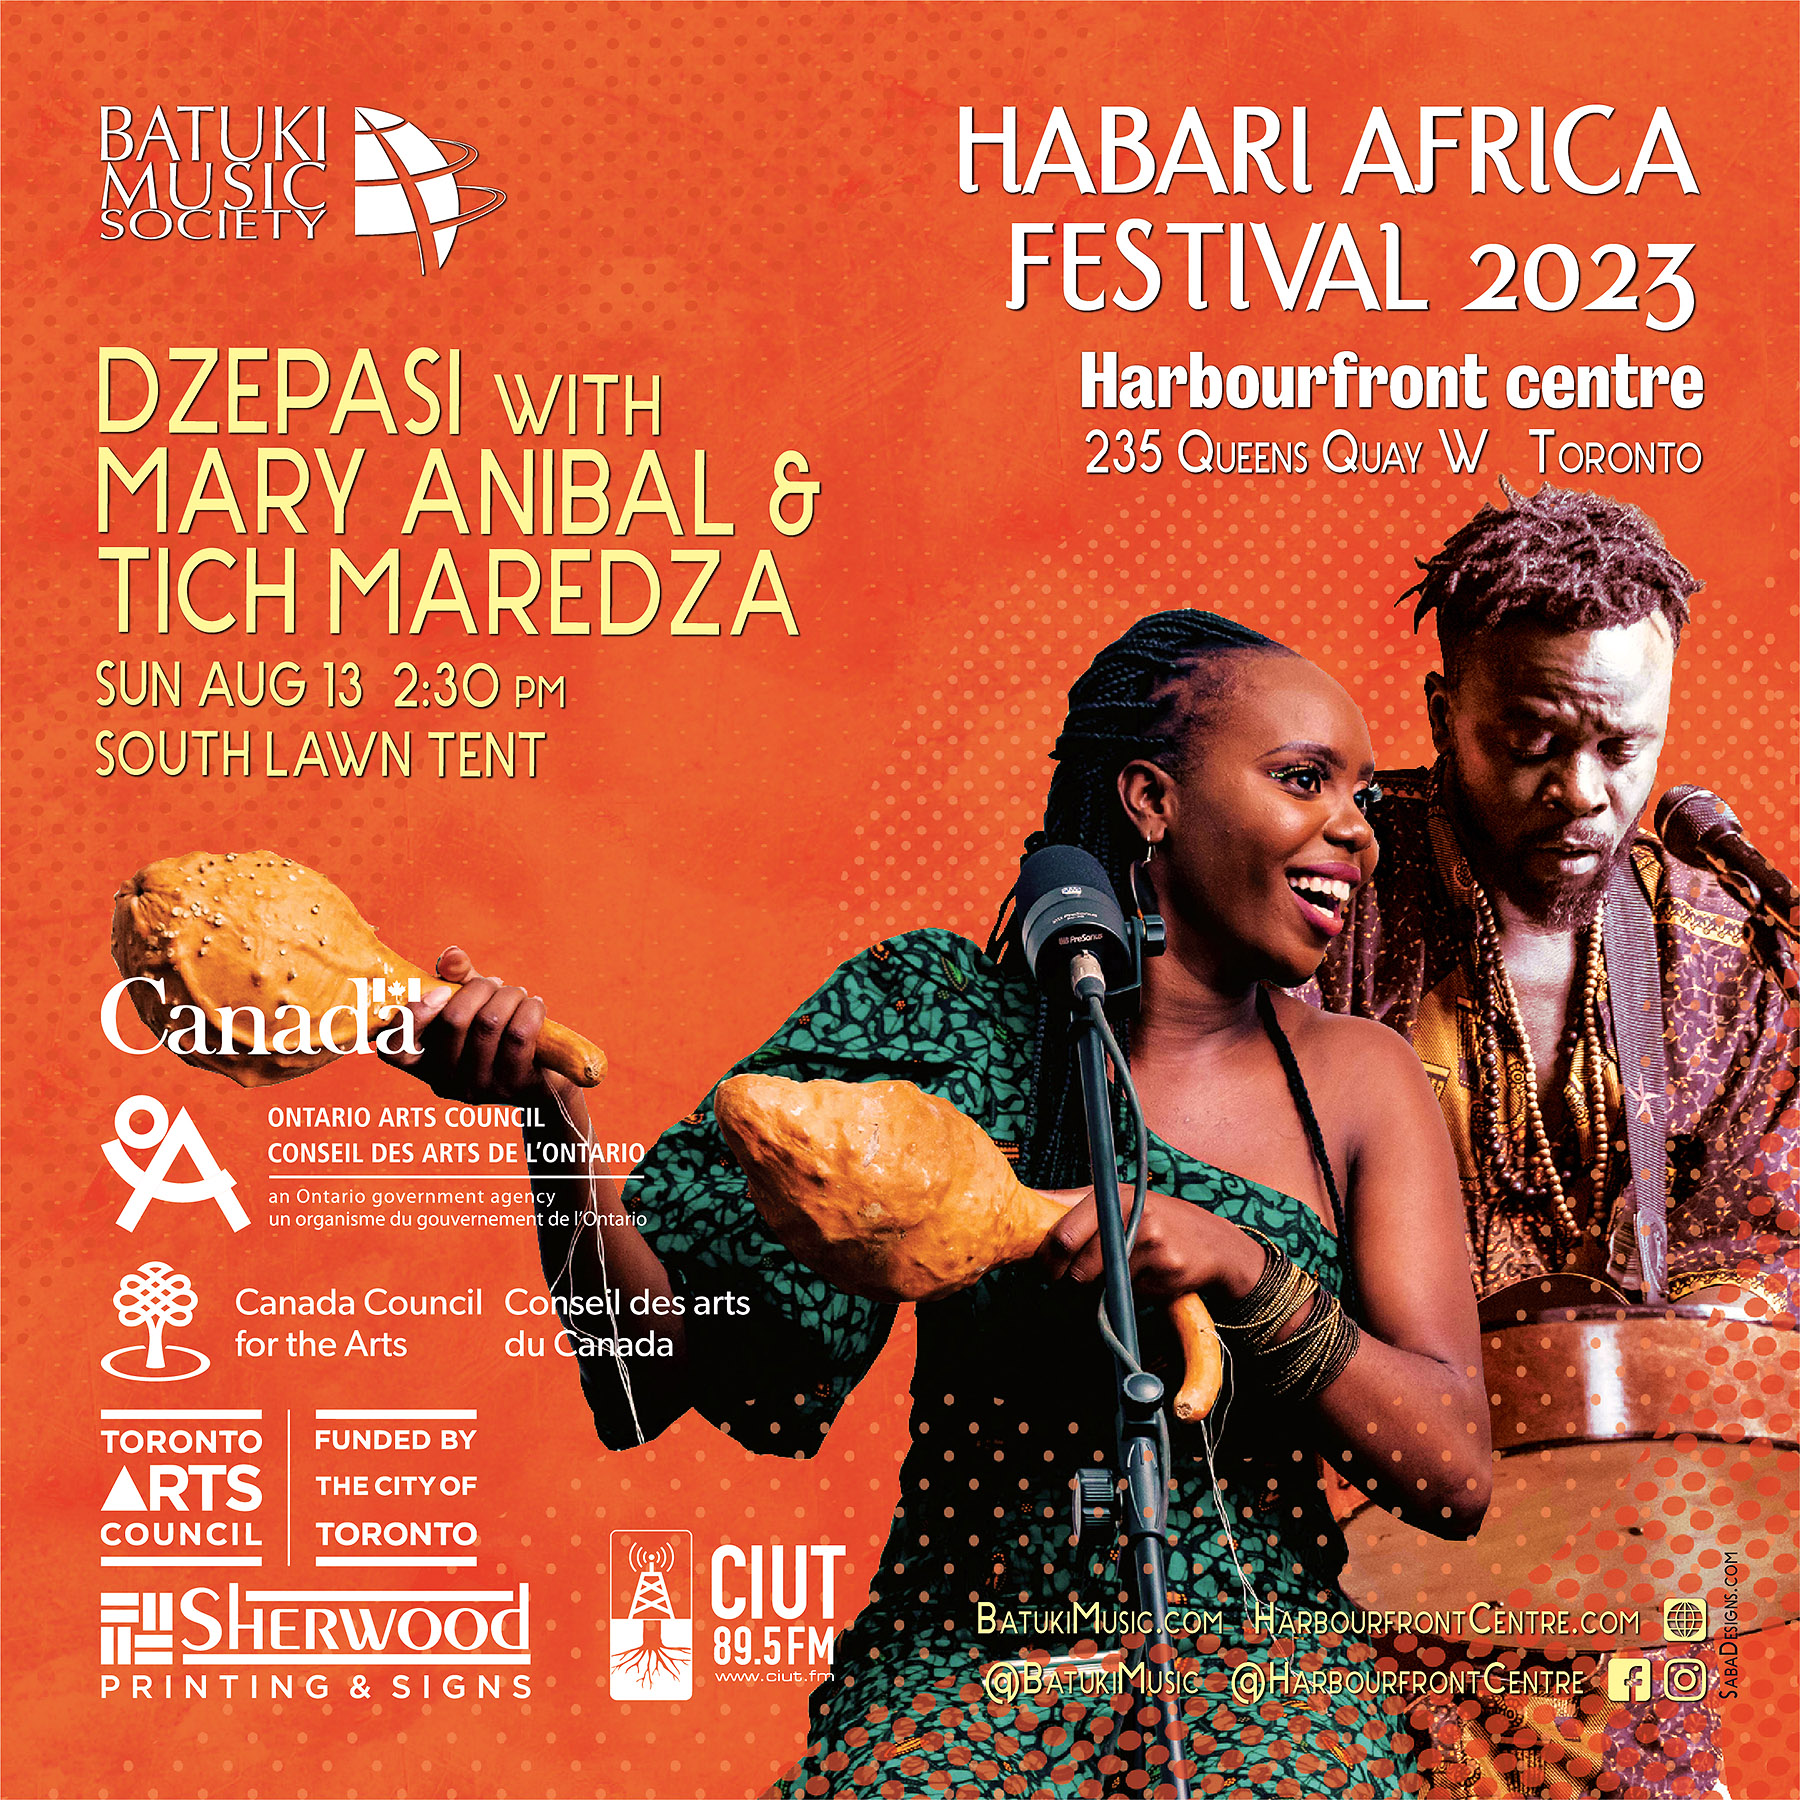 Habari Africa Live Festival 2023 by Batuki Music Society Dze Pasi Tich Maredza Mary Anibal